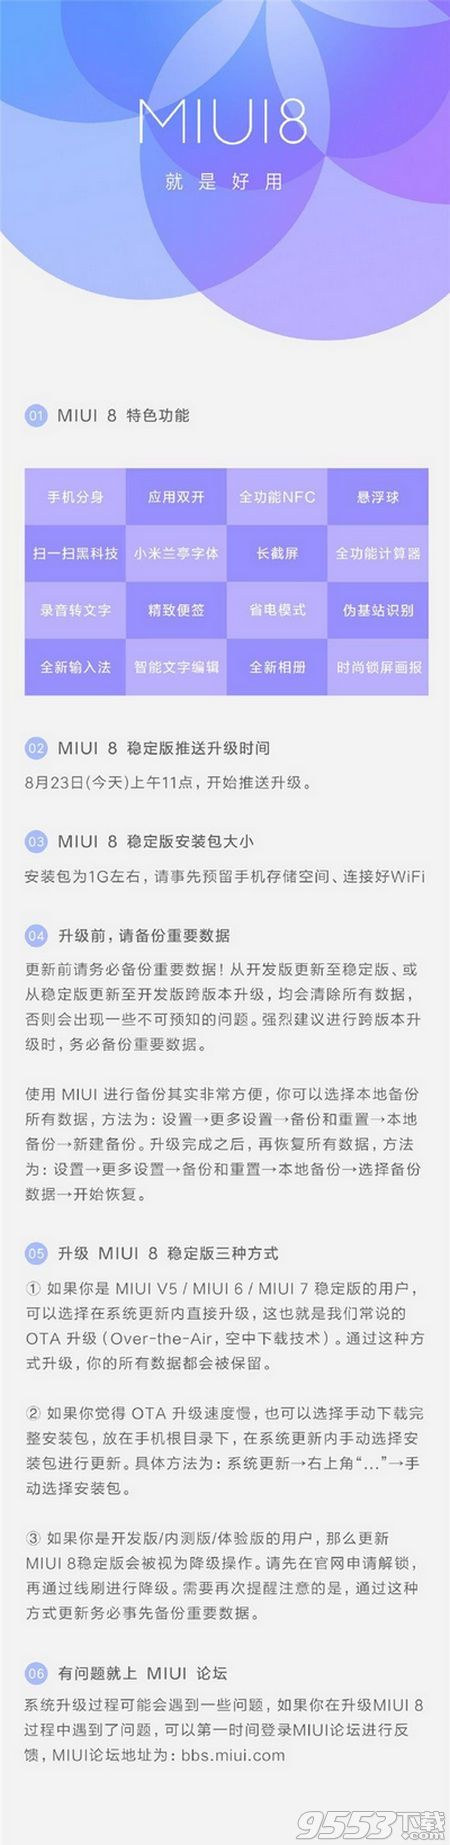 MIUI8稳定版怎么升级 MIUI8稳定版的升级攻略